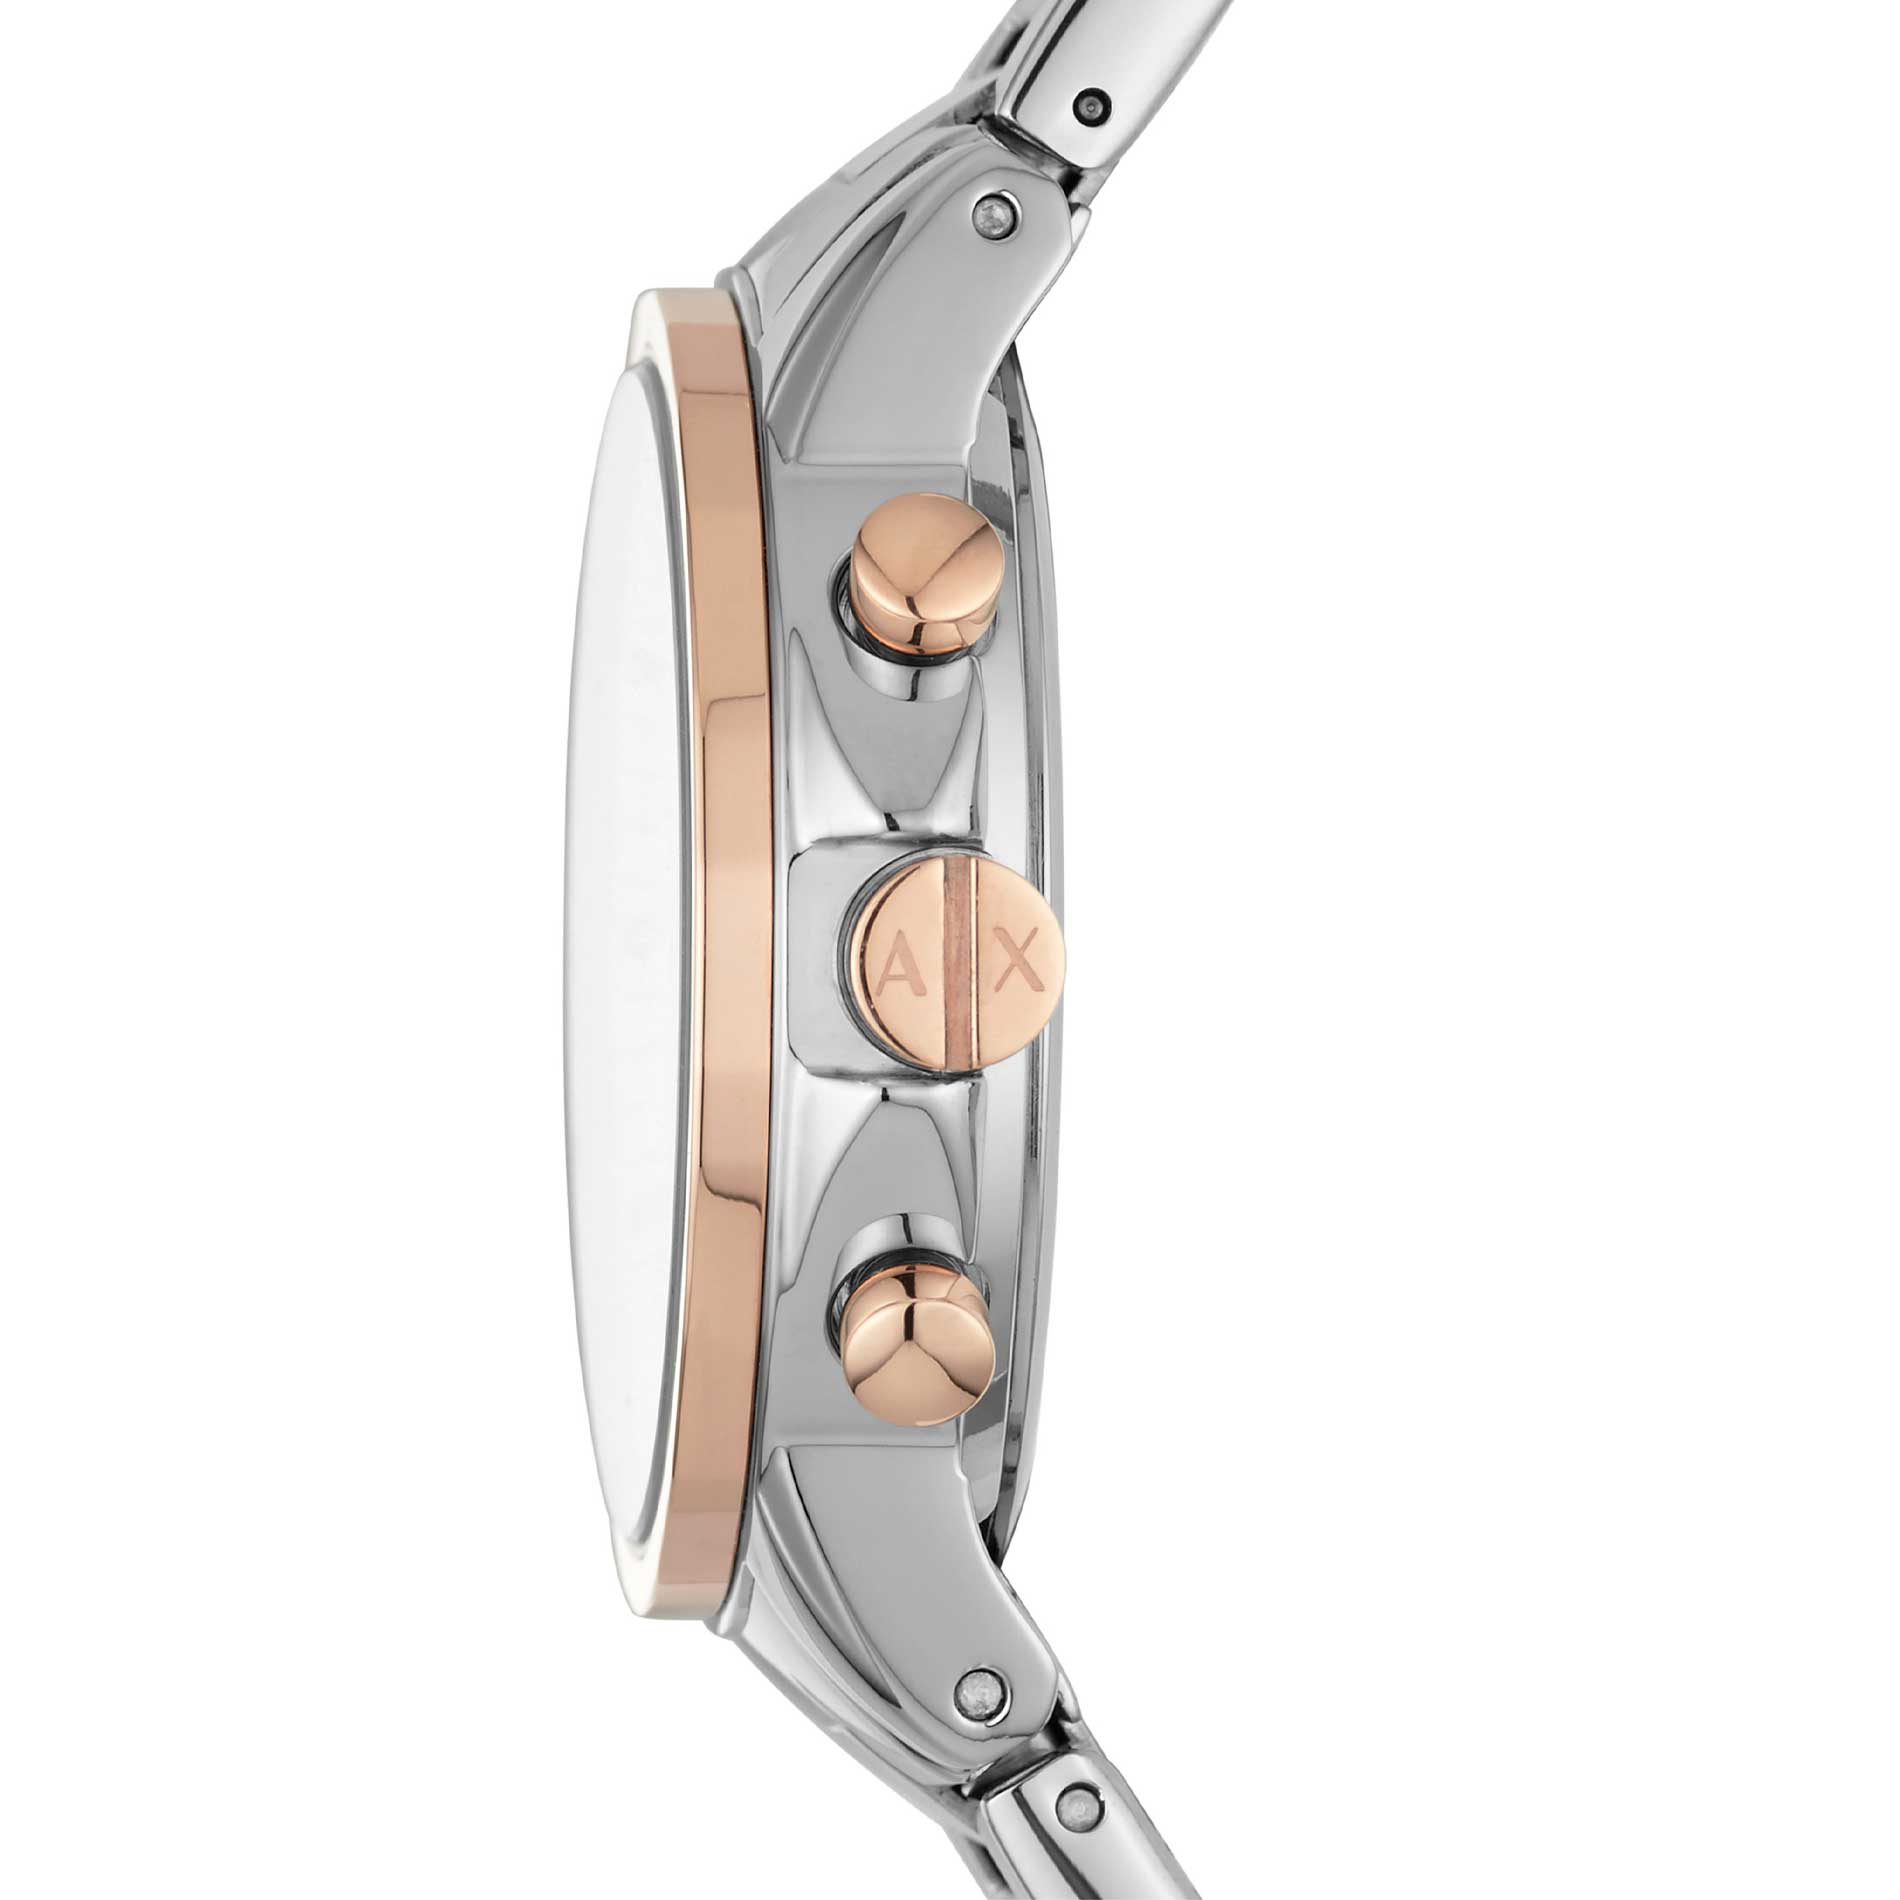 Armani Exchange AX4331 dame armbåndsur med stål/rosaguld-lænke og perlemor urskive. Uret er set fra siden.